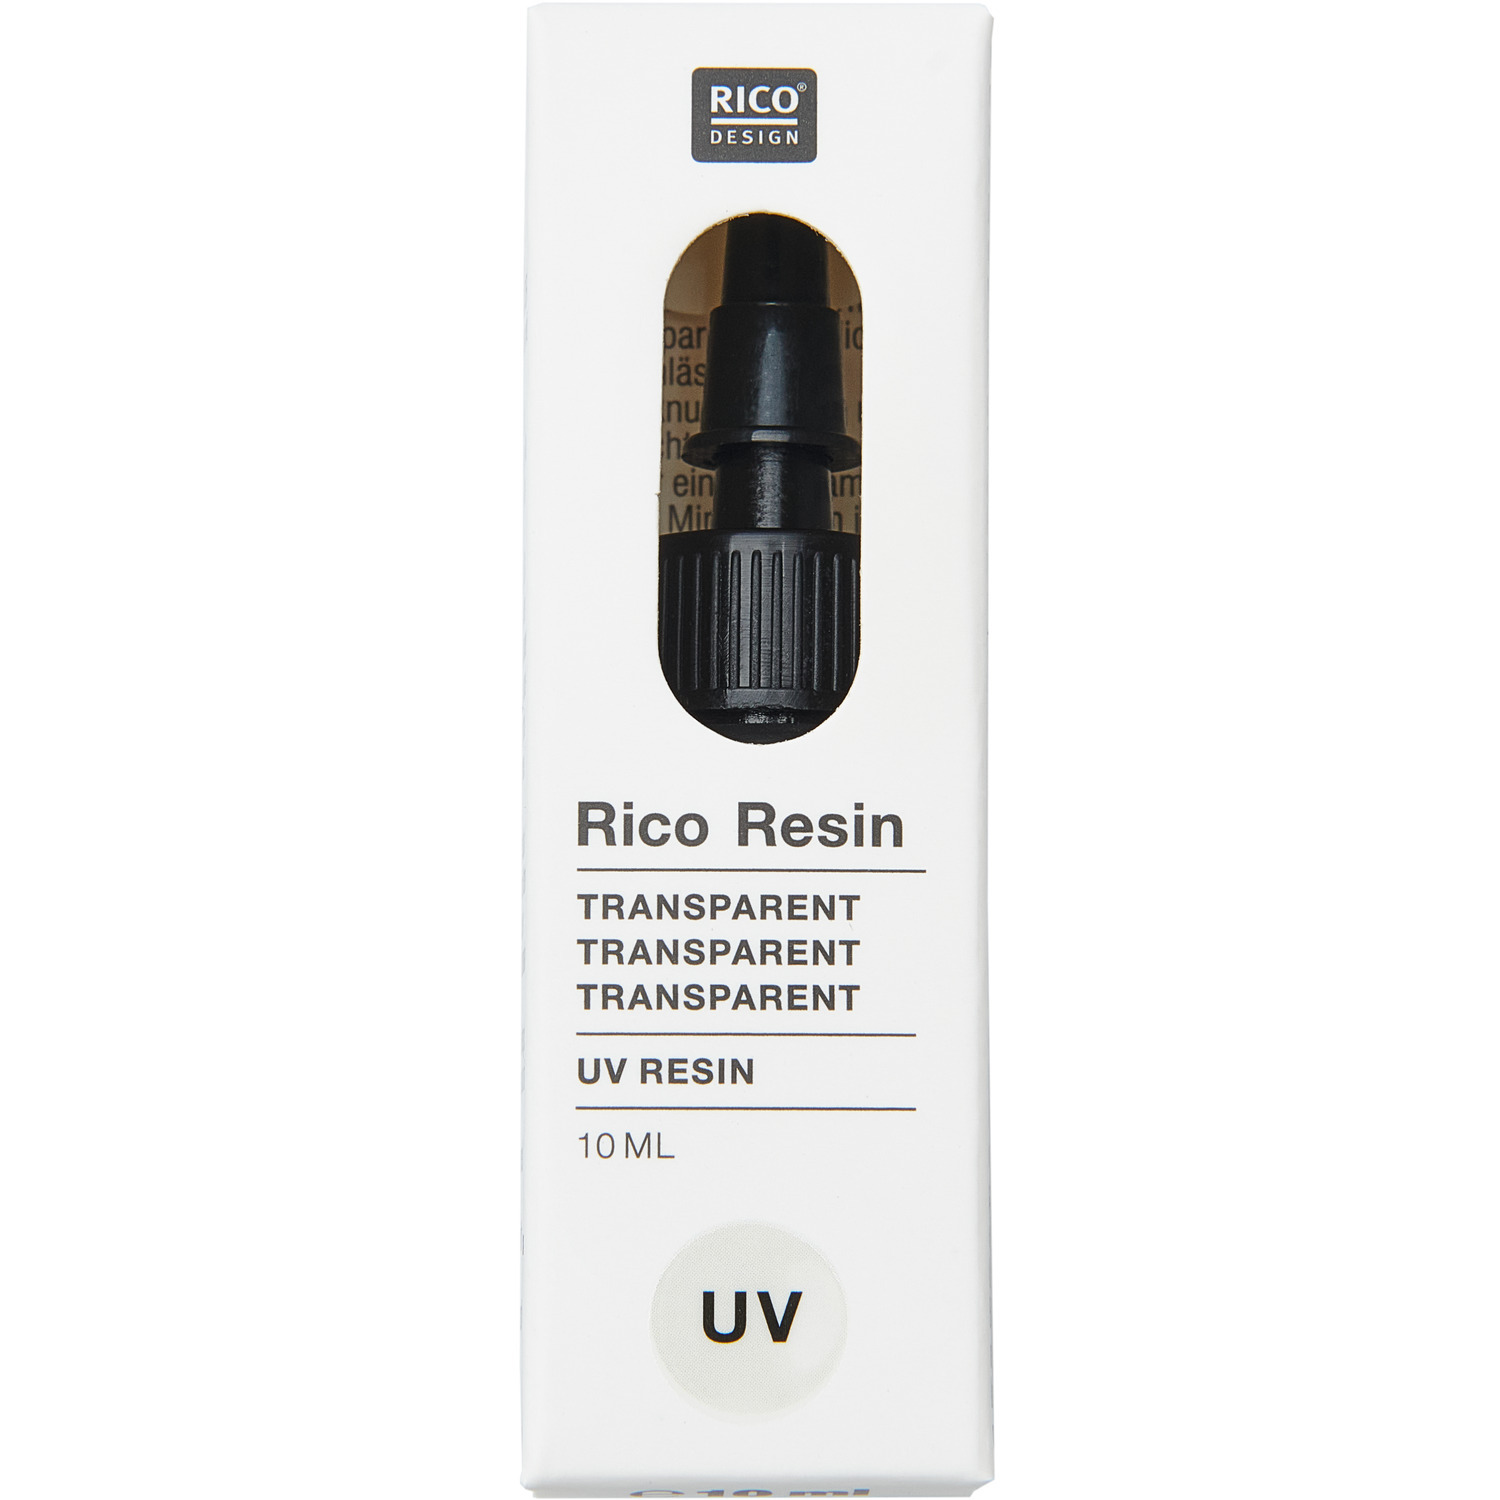 UV Resin